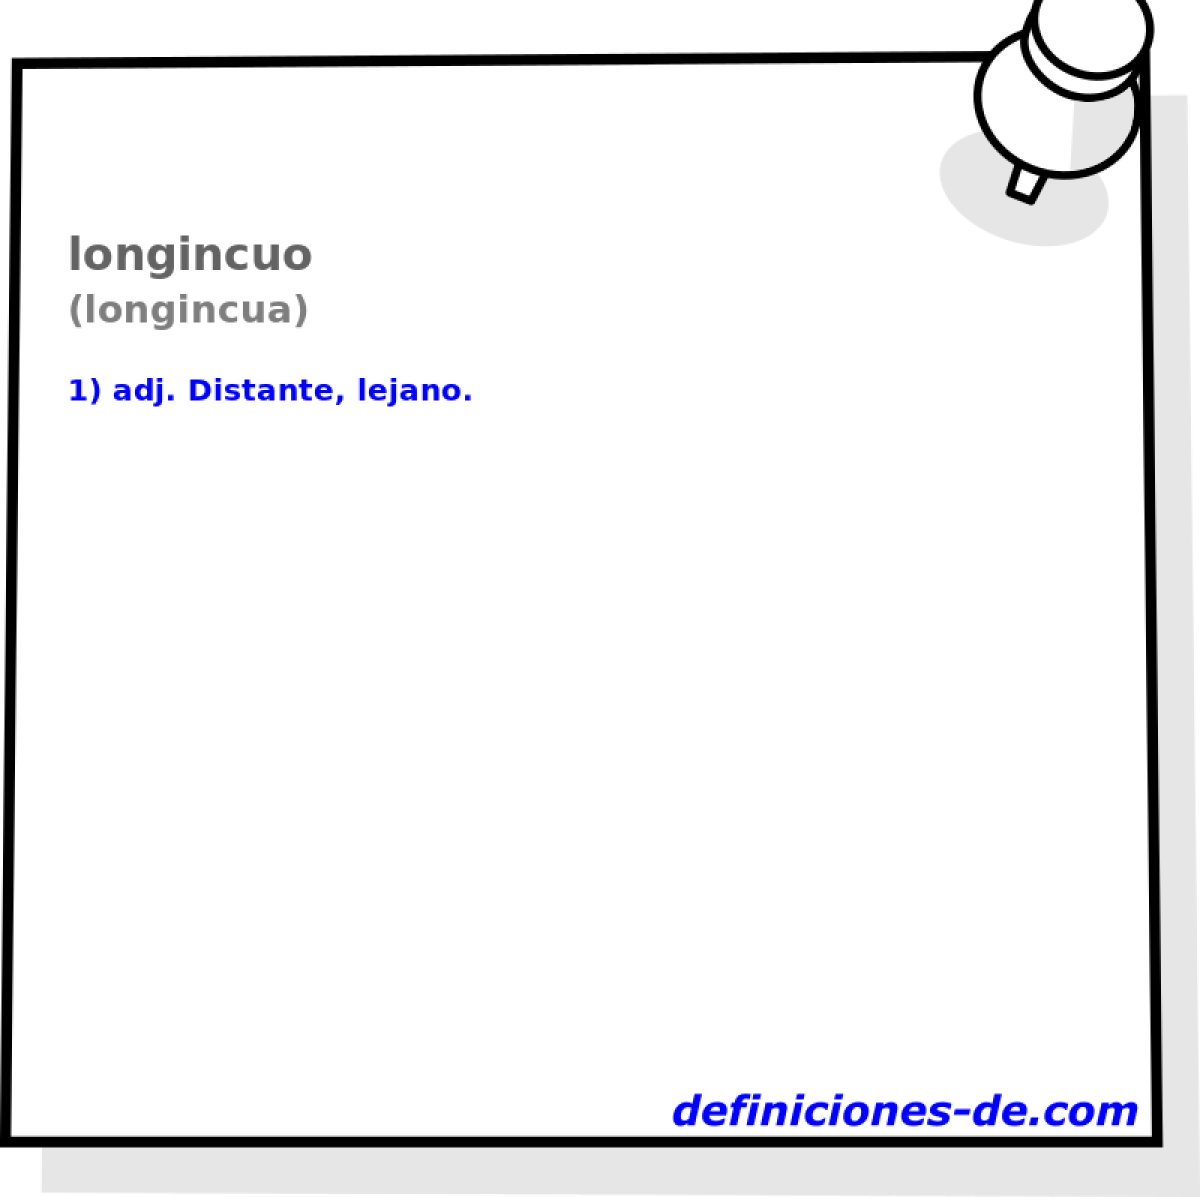 longincuo (longincua)